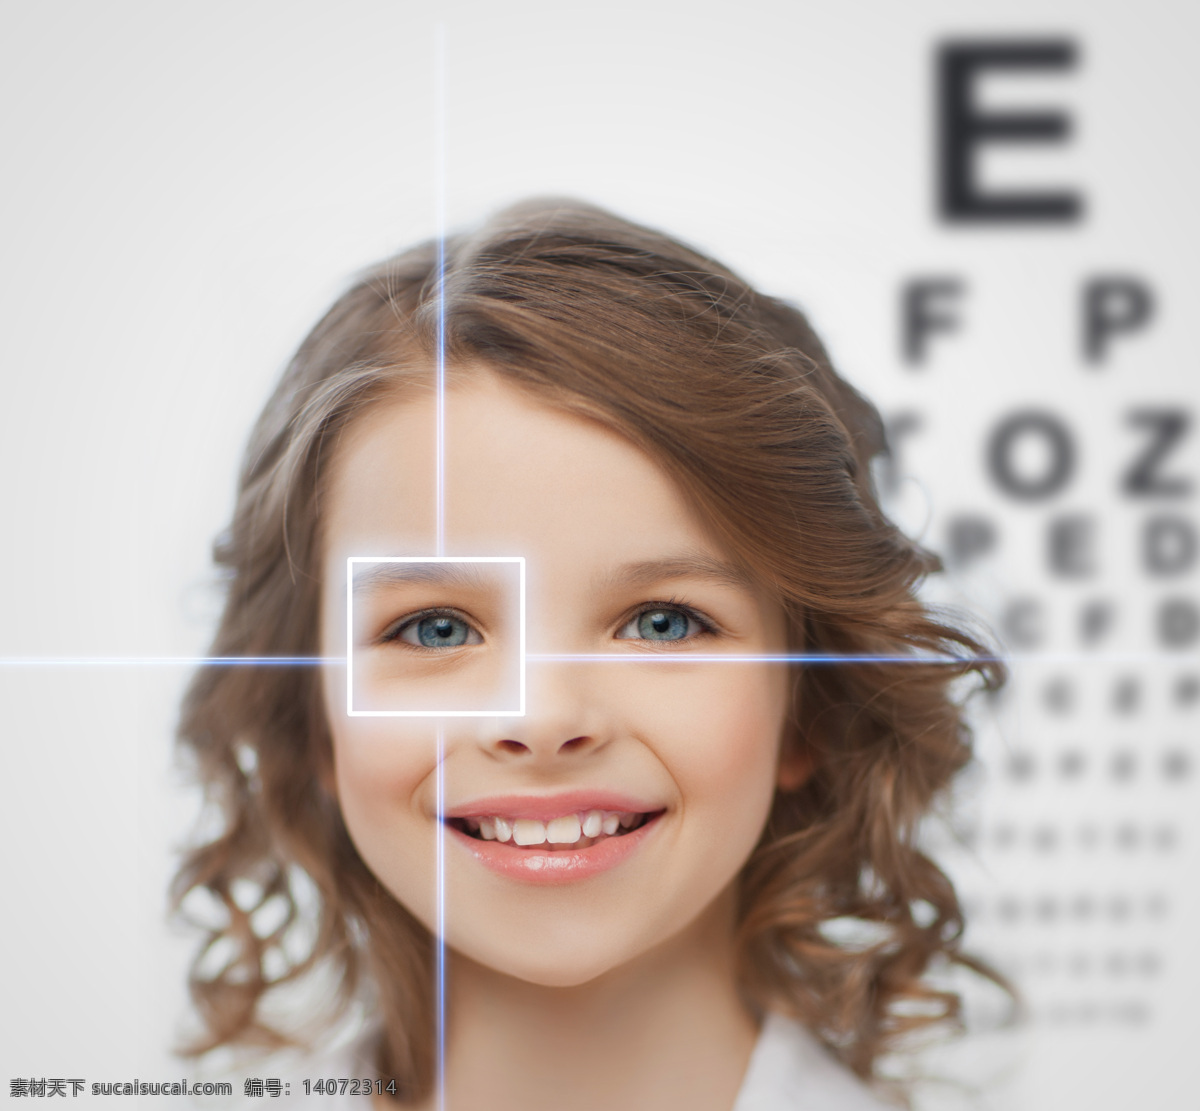 可爱 外国 女孩 儿童 孩子 视力 眼科 视力测试卡 医疗护理 现代科技